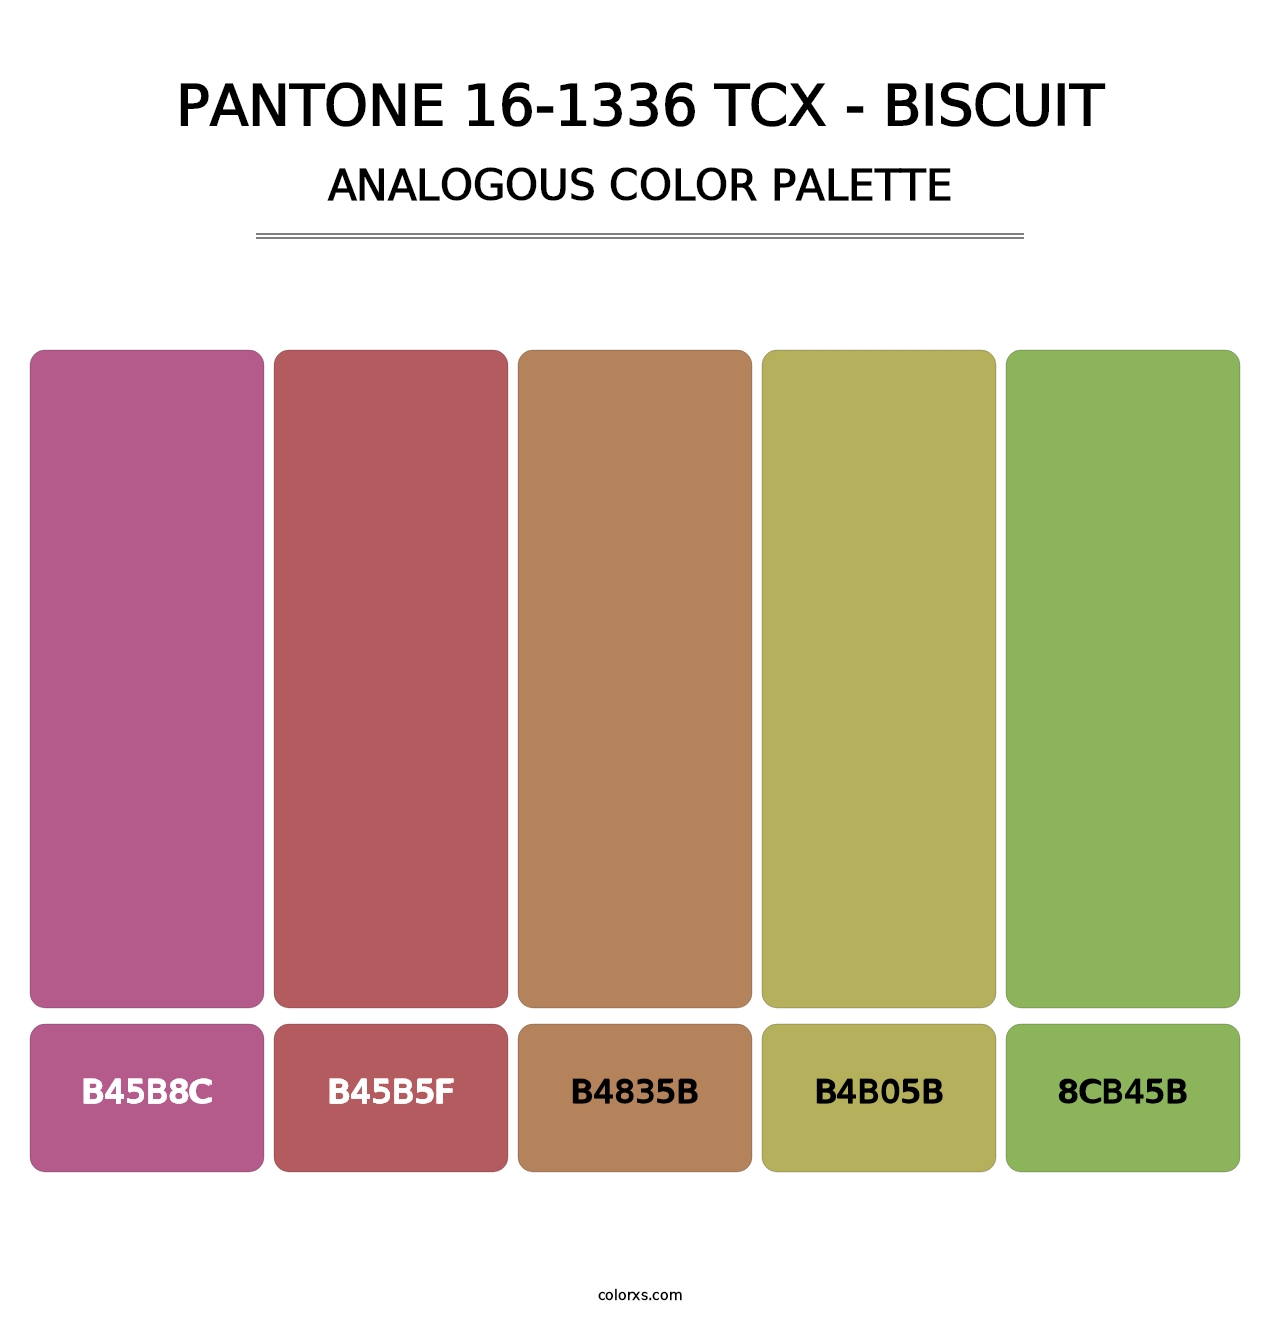 PANTONE 16-1336 TCX - Biscuit - Analogous Color Palette